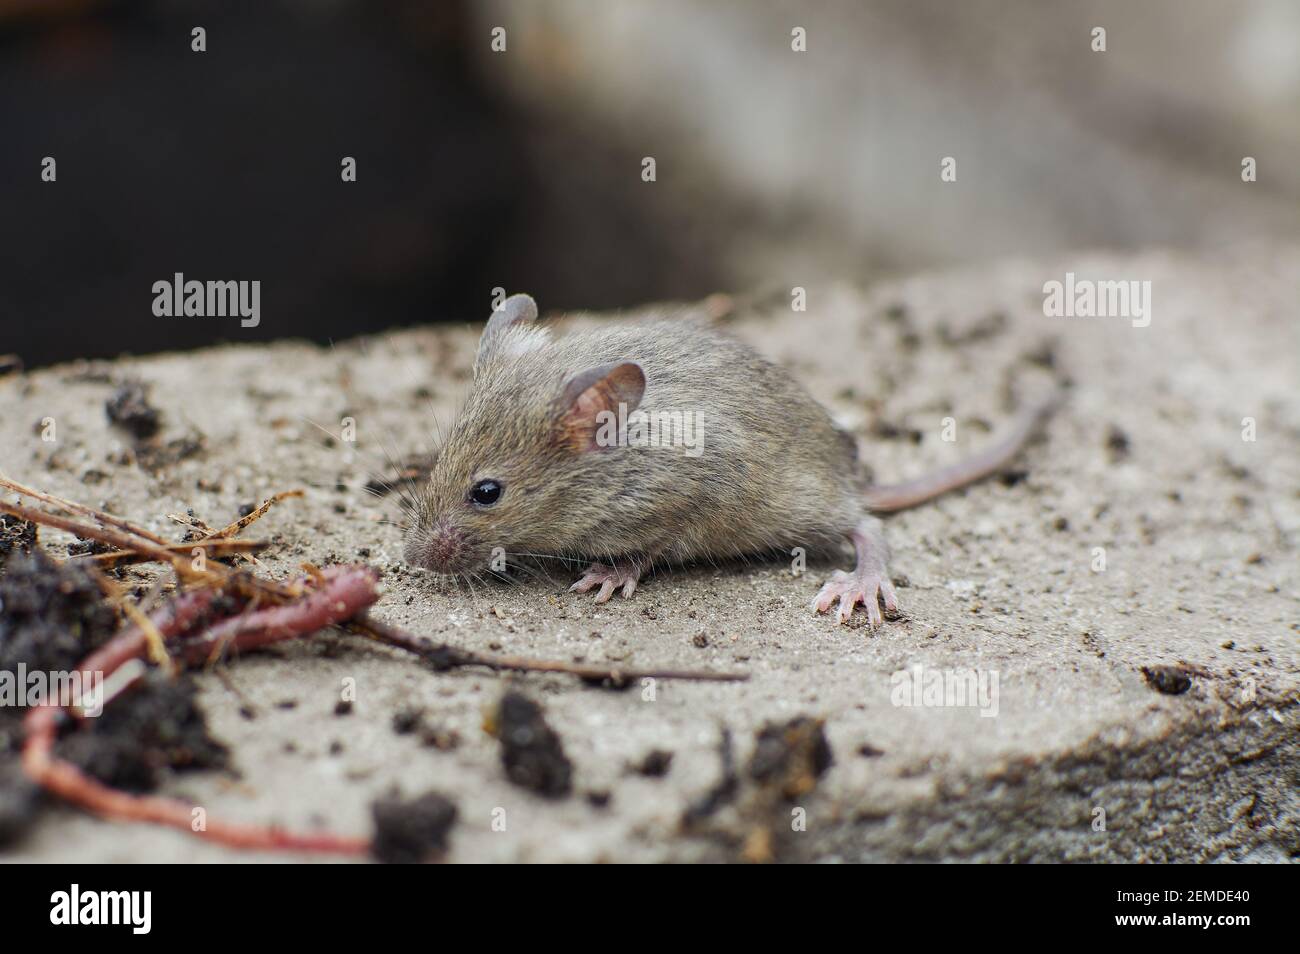 Kleine graue Maus. Nagetier. Verängstigte kleine Maus in natürlichen  Lebensraum Stockfotografie - Alamy